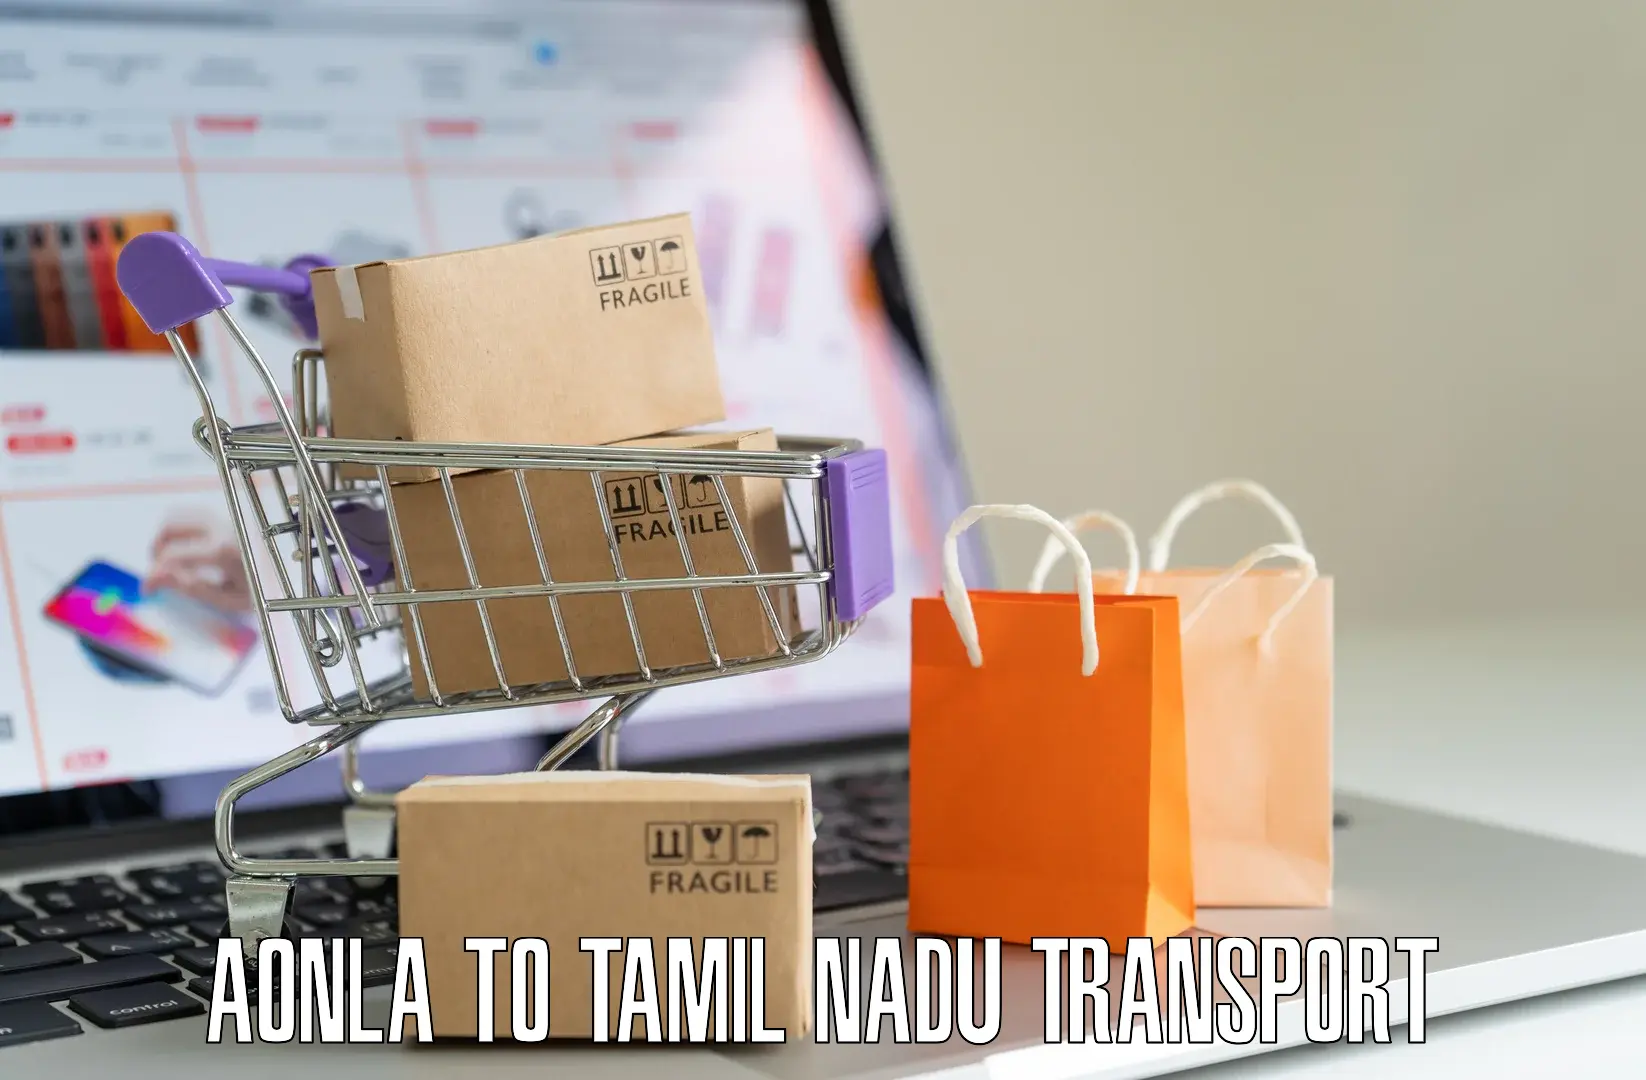 Door to door transport services Aonla to Tamil Nadu